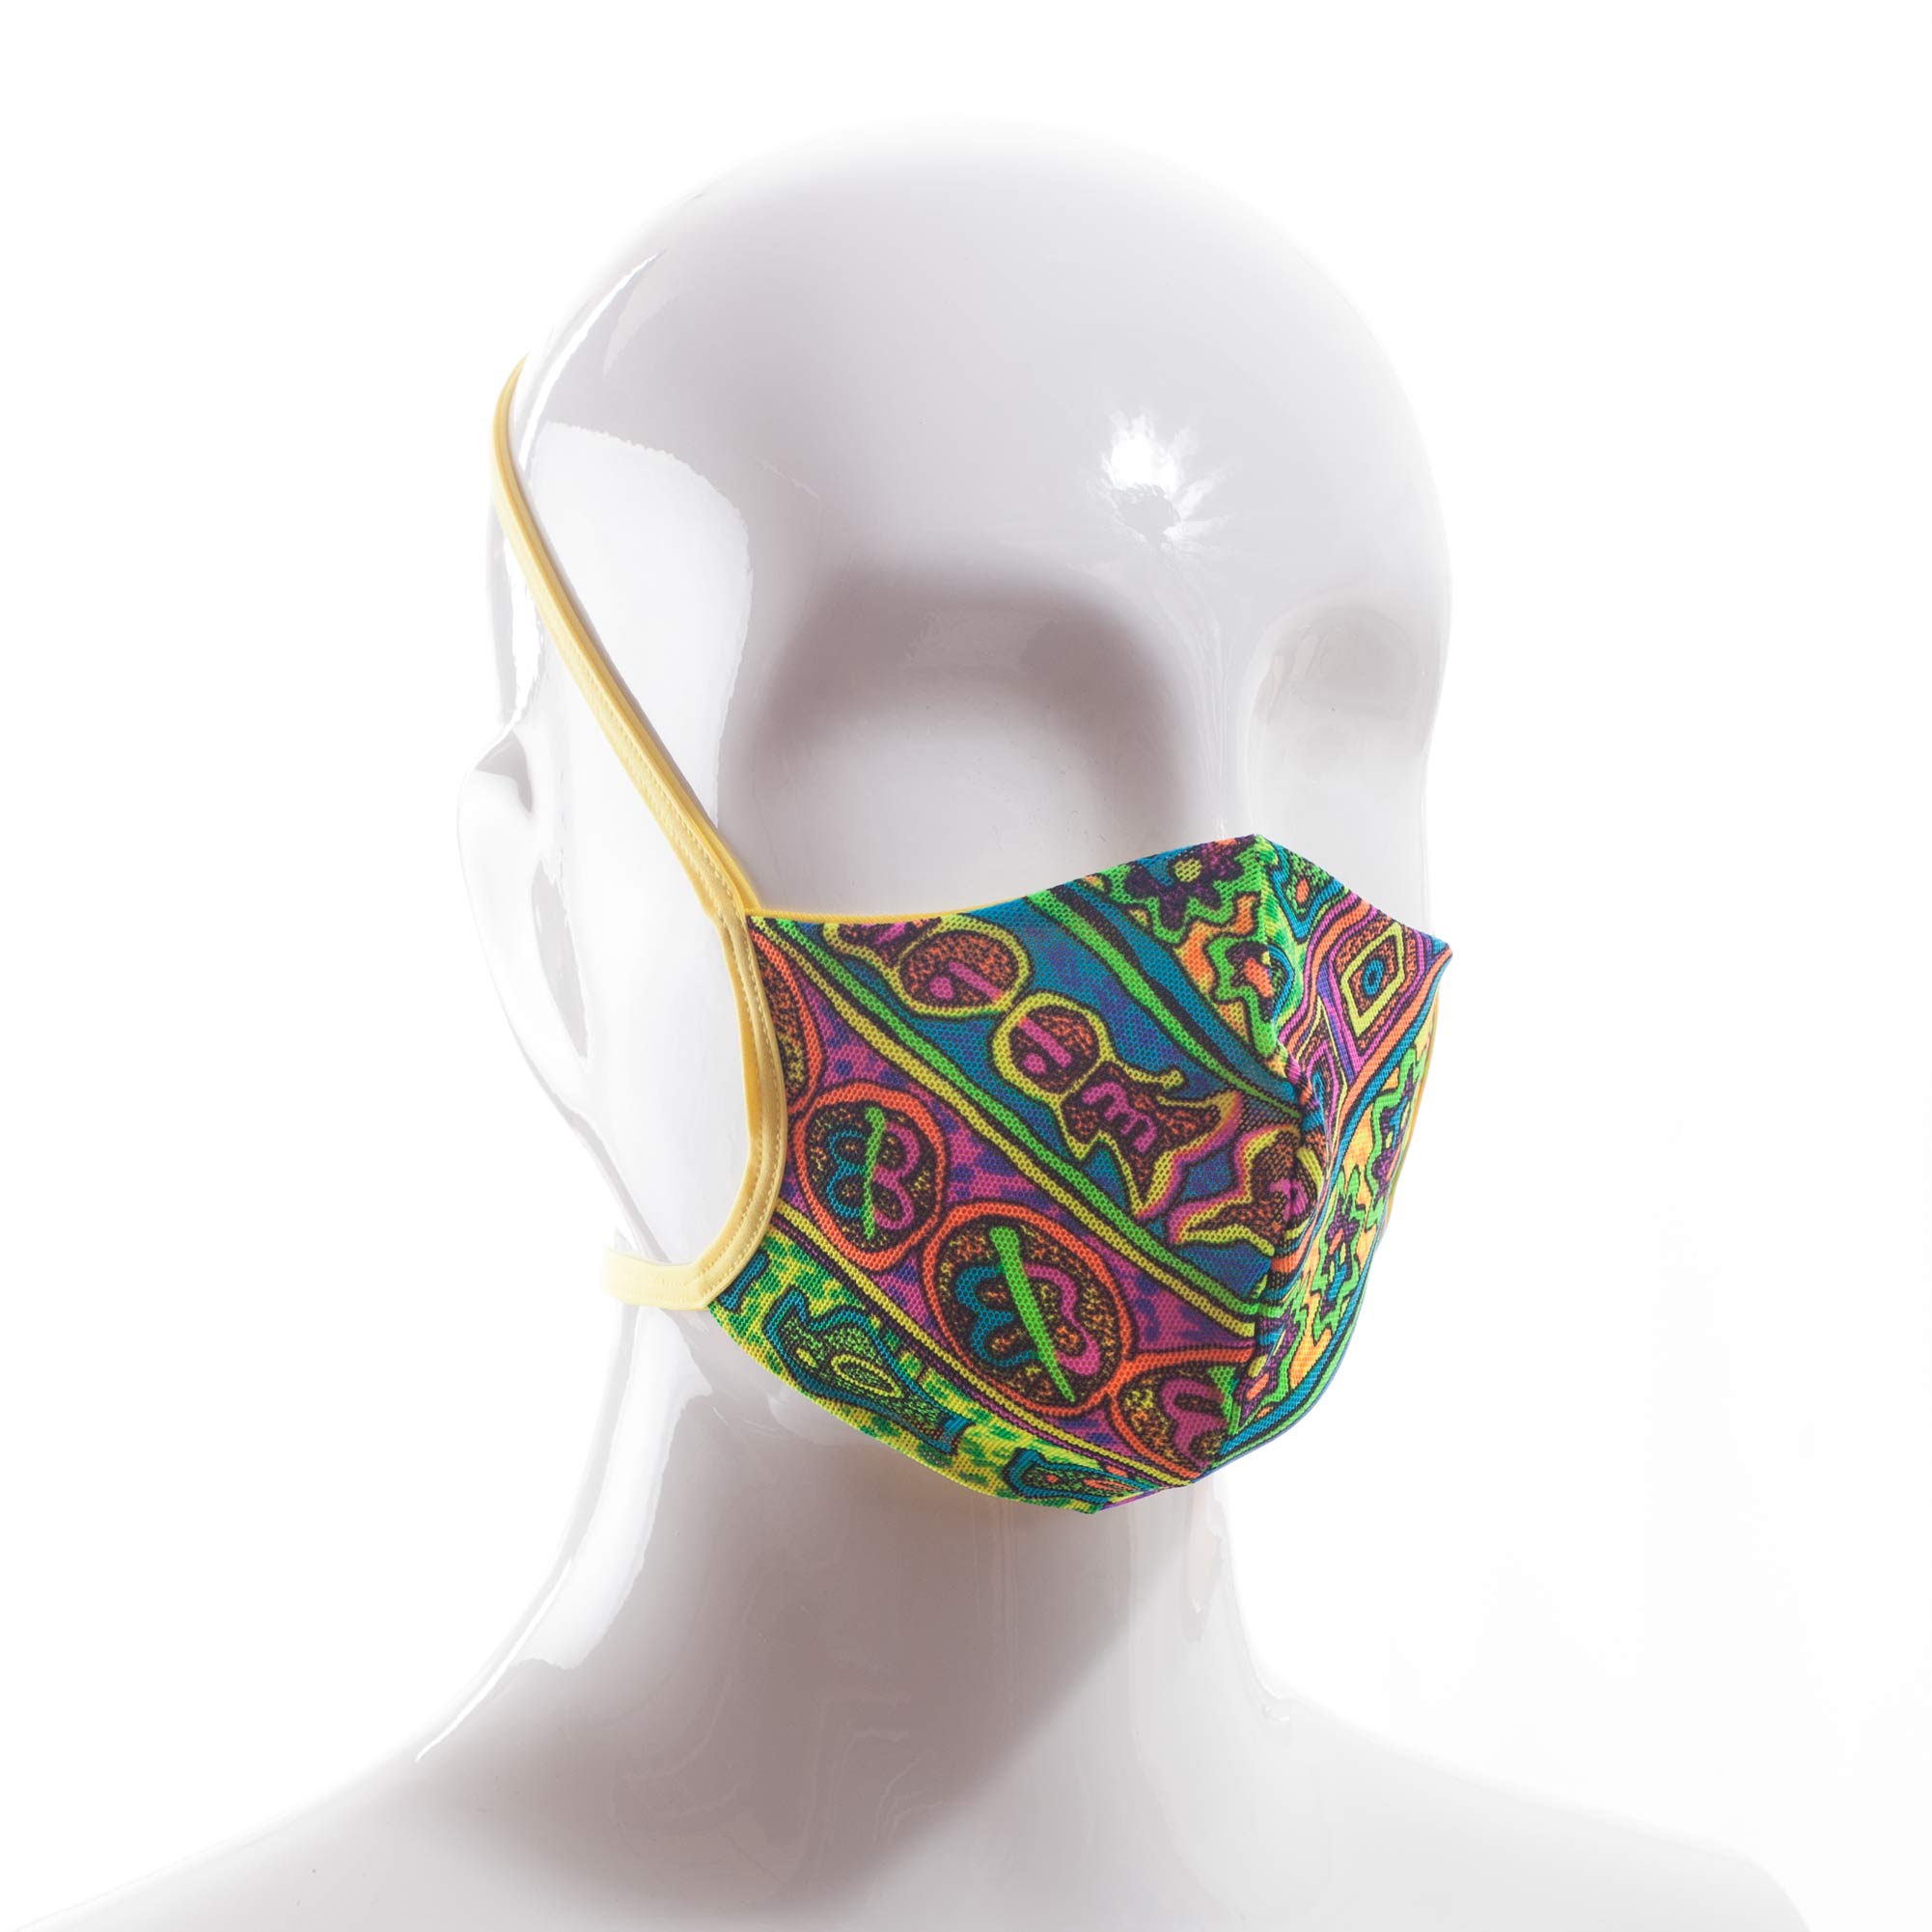 Die Baumwoll-Polyester Mund-Nasen Maske BWPM4Sommergelb von der Wonneberger Manufaktur ist eine textile Behelfsmaske, kein zertifizierter Mundschutz.

Sie schützt nur bedingt vor Ansteckung. Ihr eigentlicher Zweck ist es, den Atem des Trägers zu filtern und dadurch seine Umgebung zu schützen.

Daher muss die…